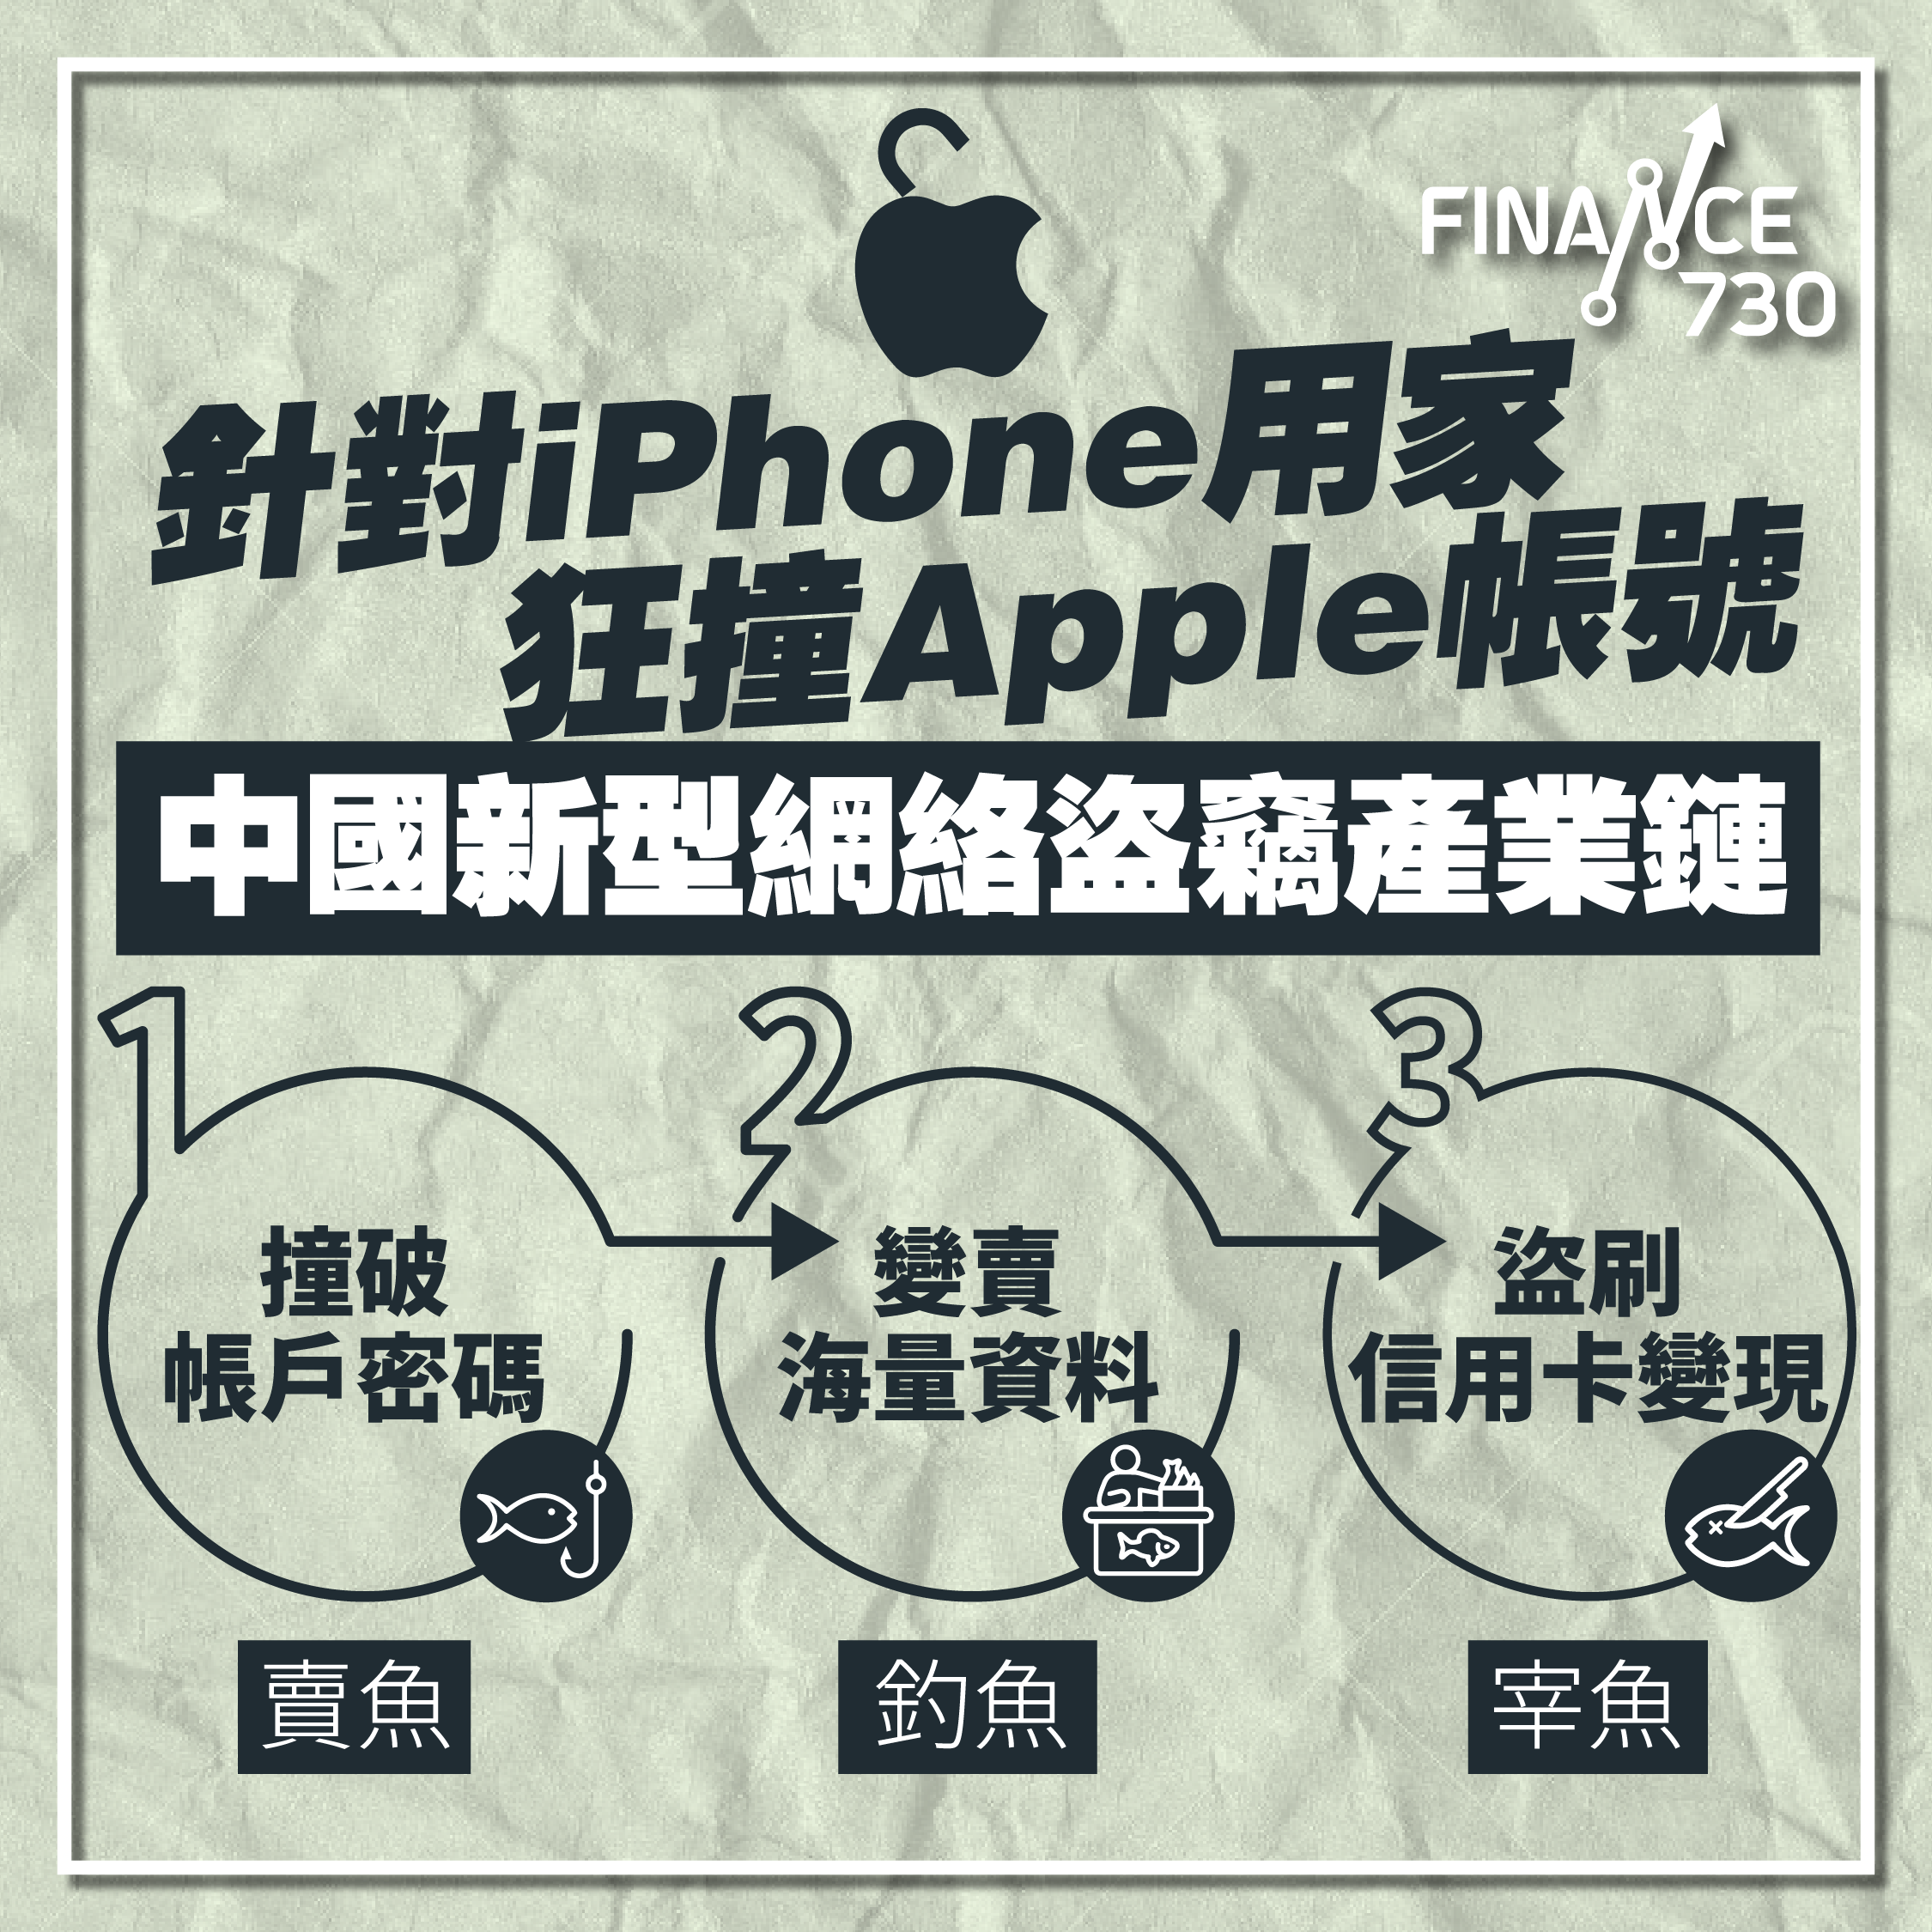 中國-詐騙-網絡-陷阱-盜竊-Apple-帳號-iPhone